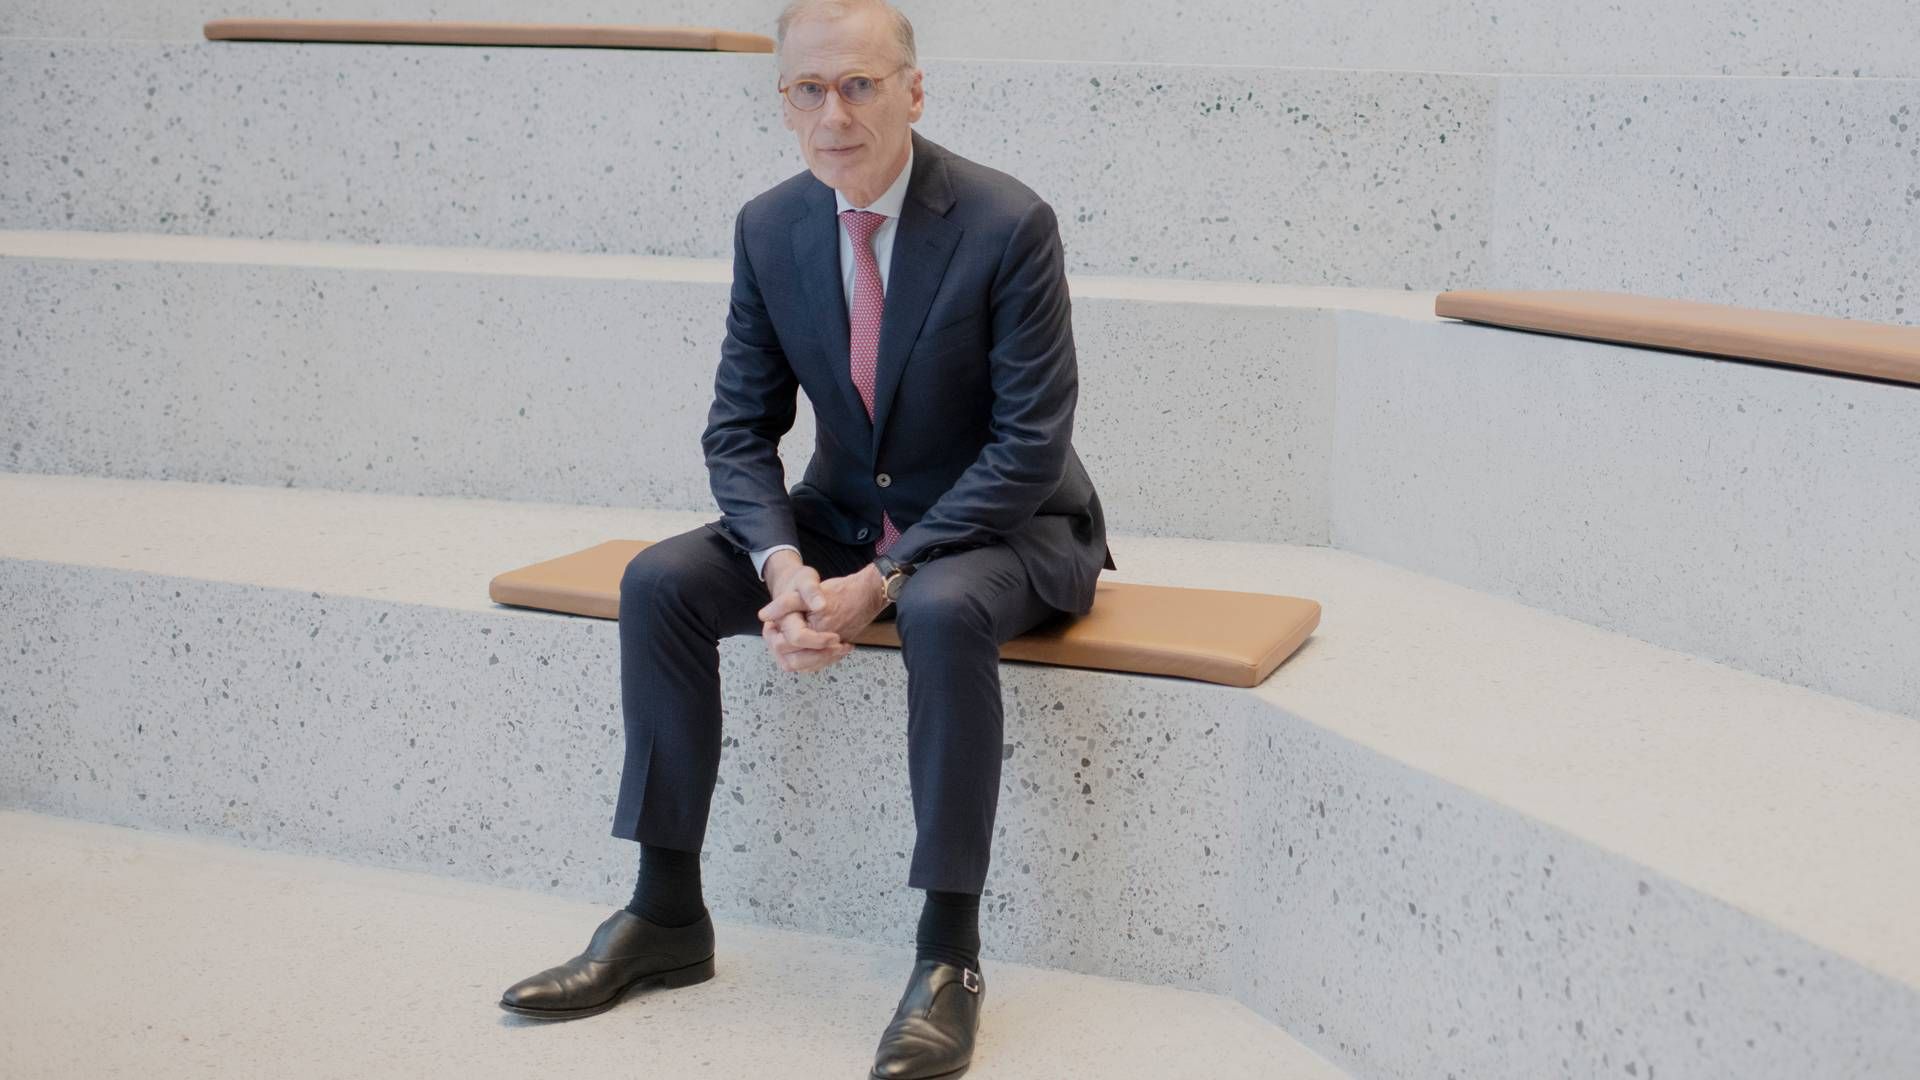 64-årige Cees 't Hart kom til Carlsberg i 2015 efter at have været en årrække i Unilever. | Foto: Liv Møller Kastrup